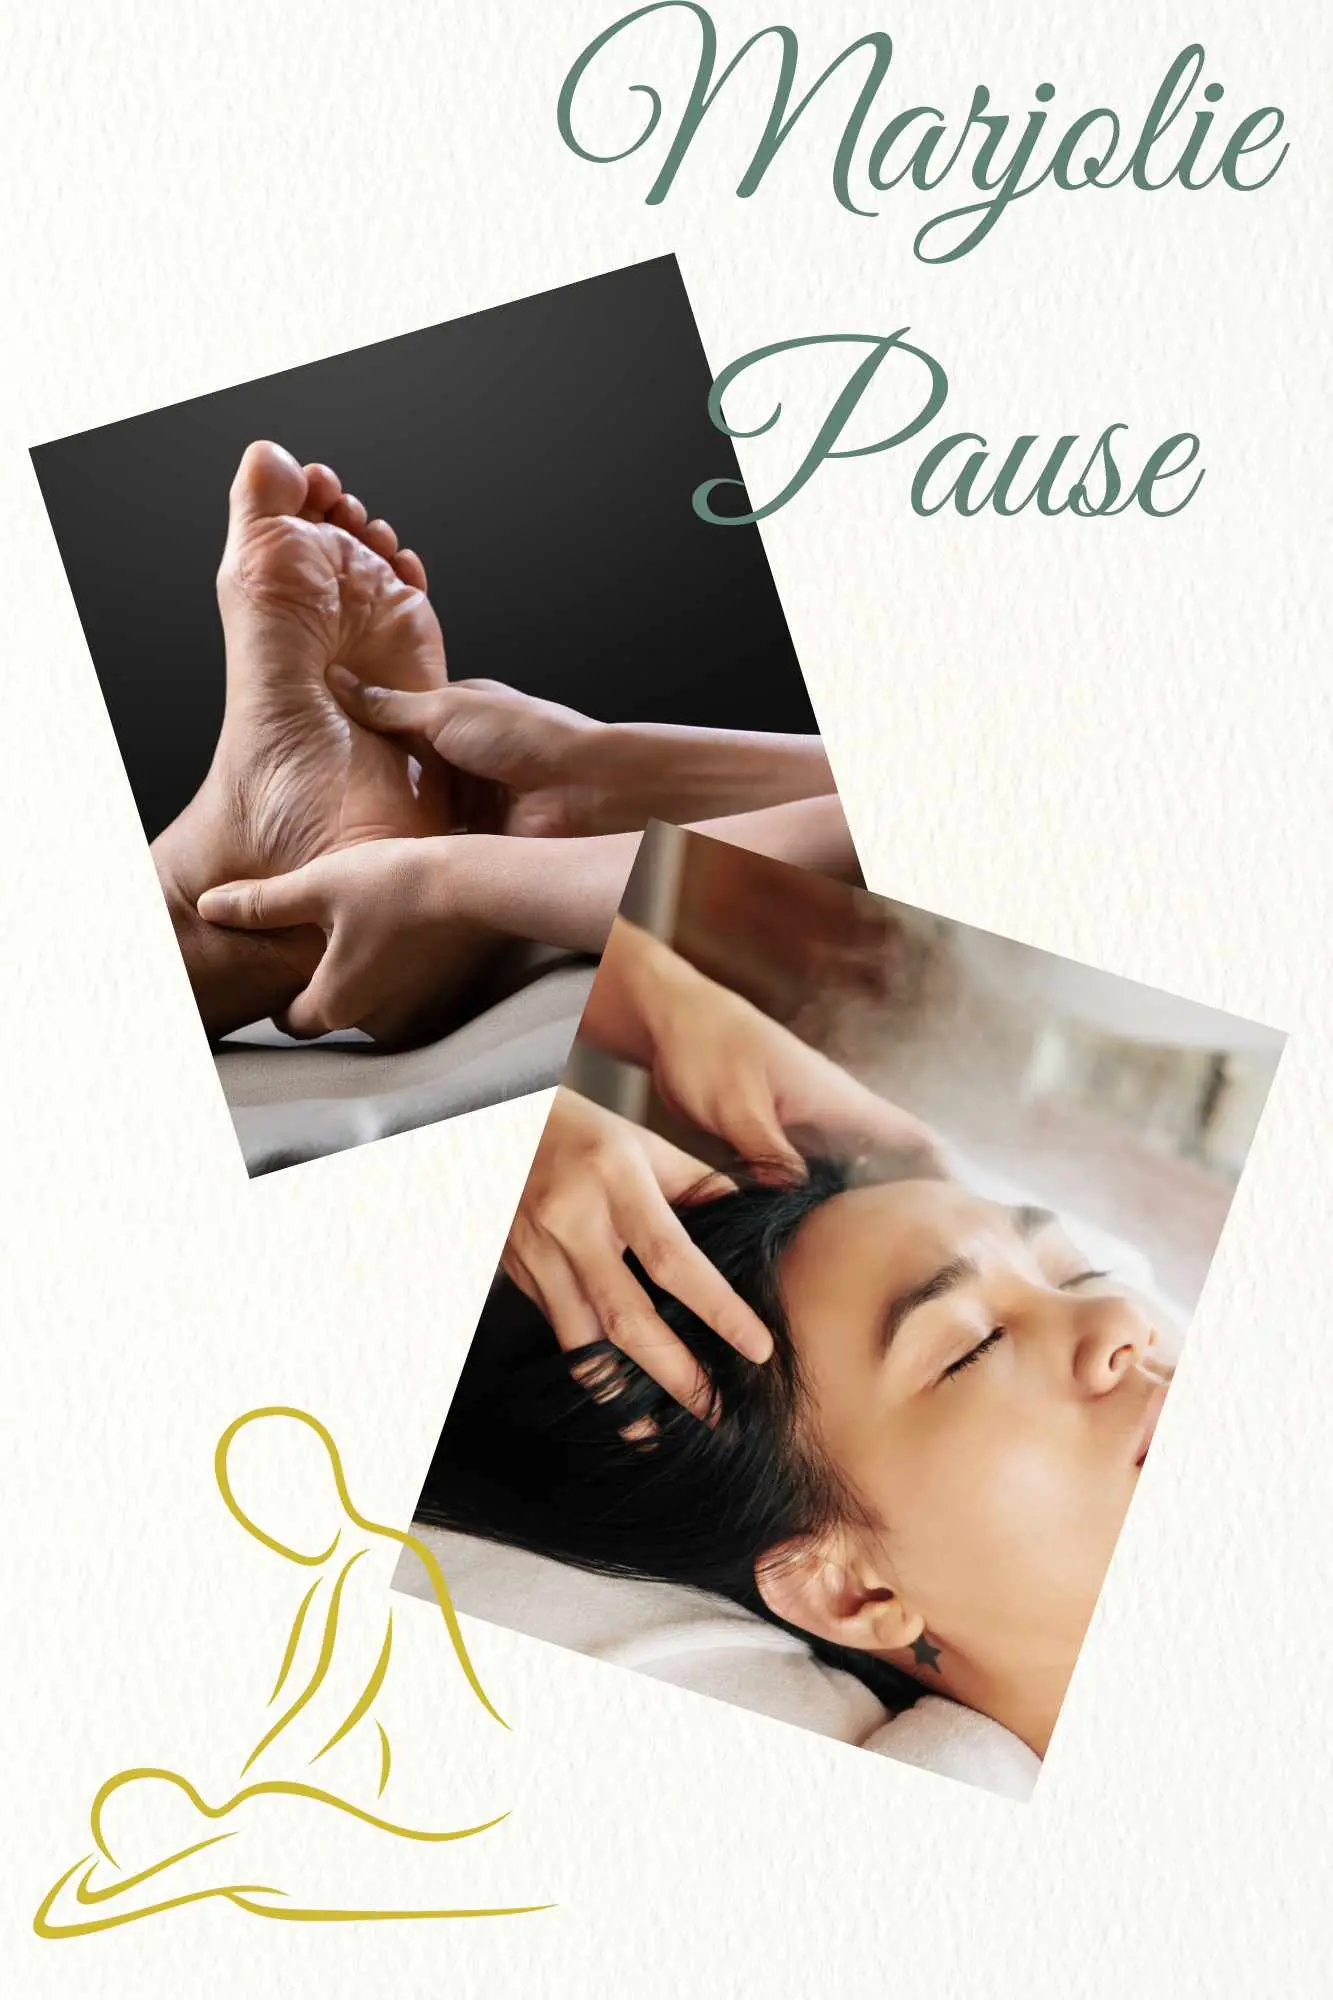 massage anti cellulite chez marjolie pause à gardanne